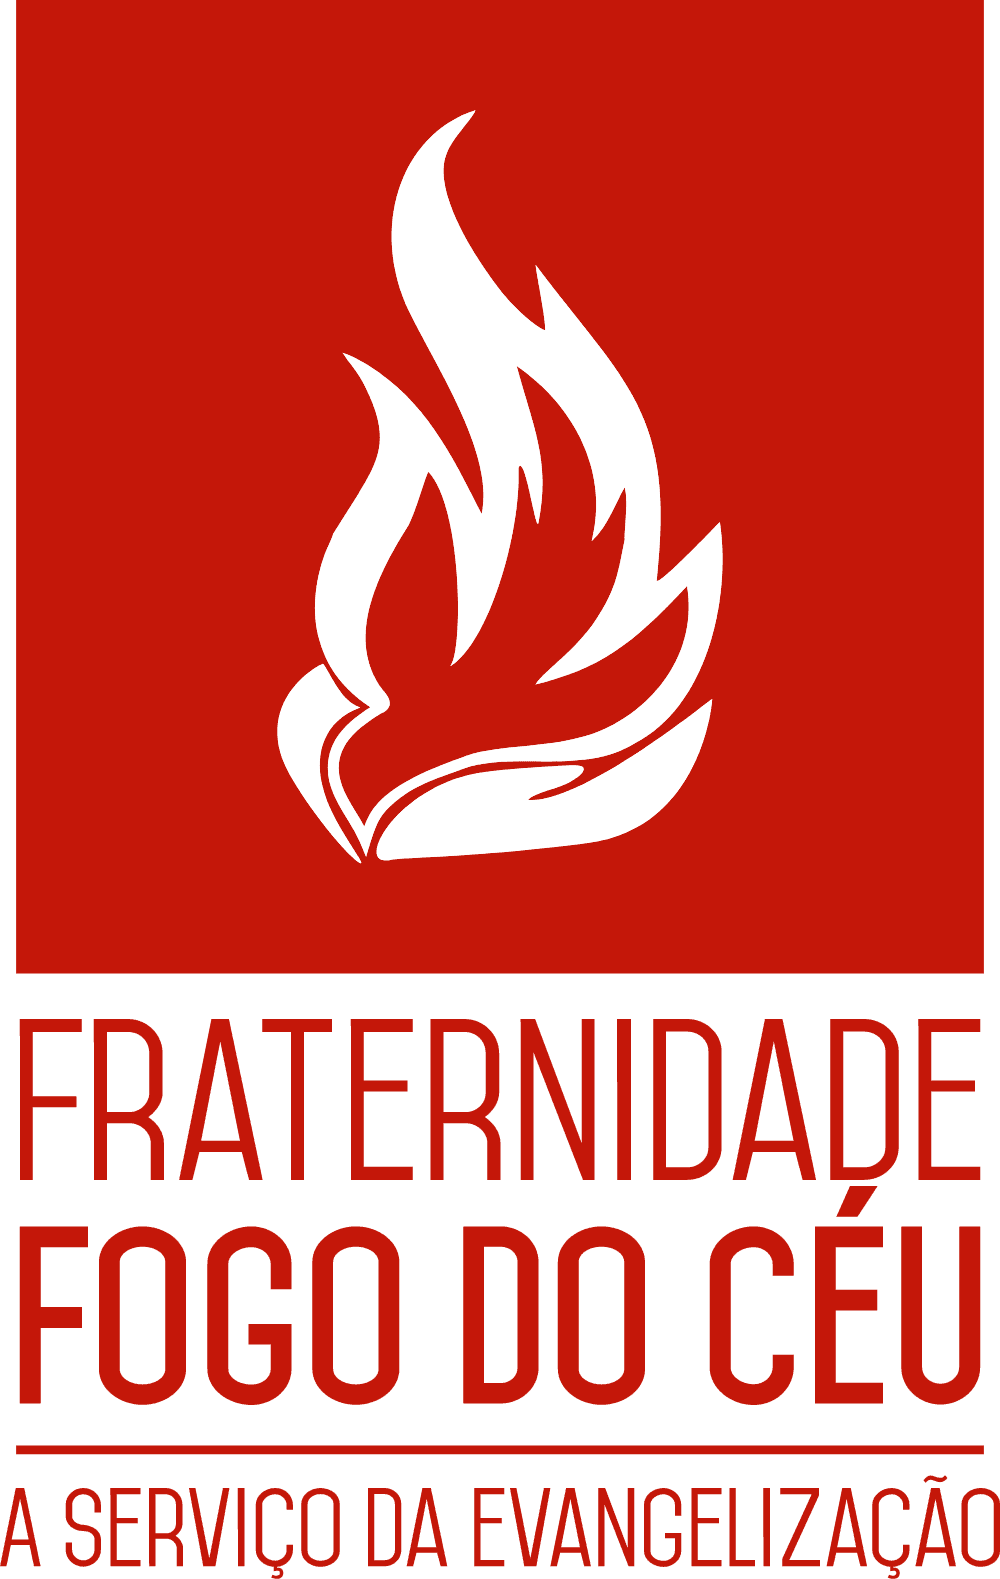 Fraternidade Fogo do Ceu Logo download